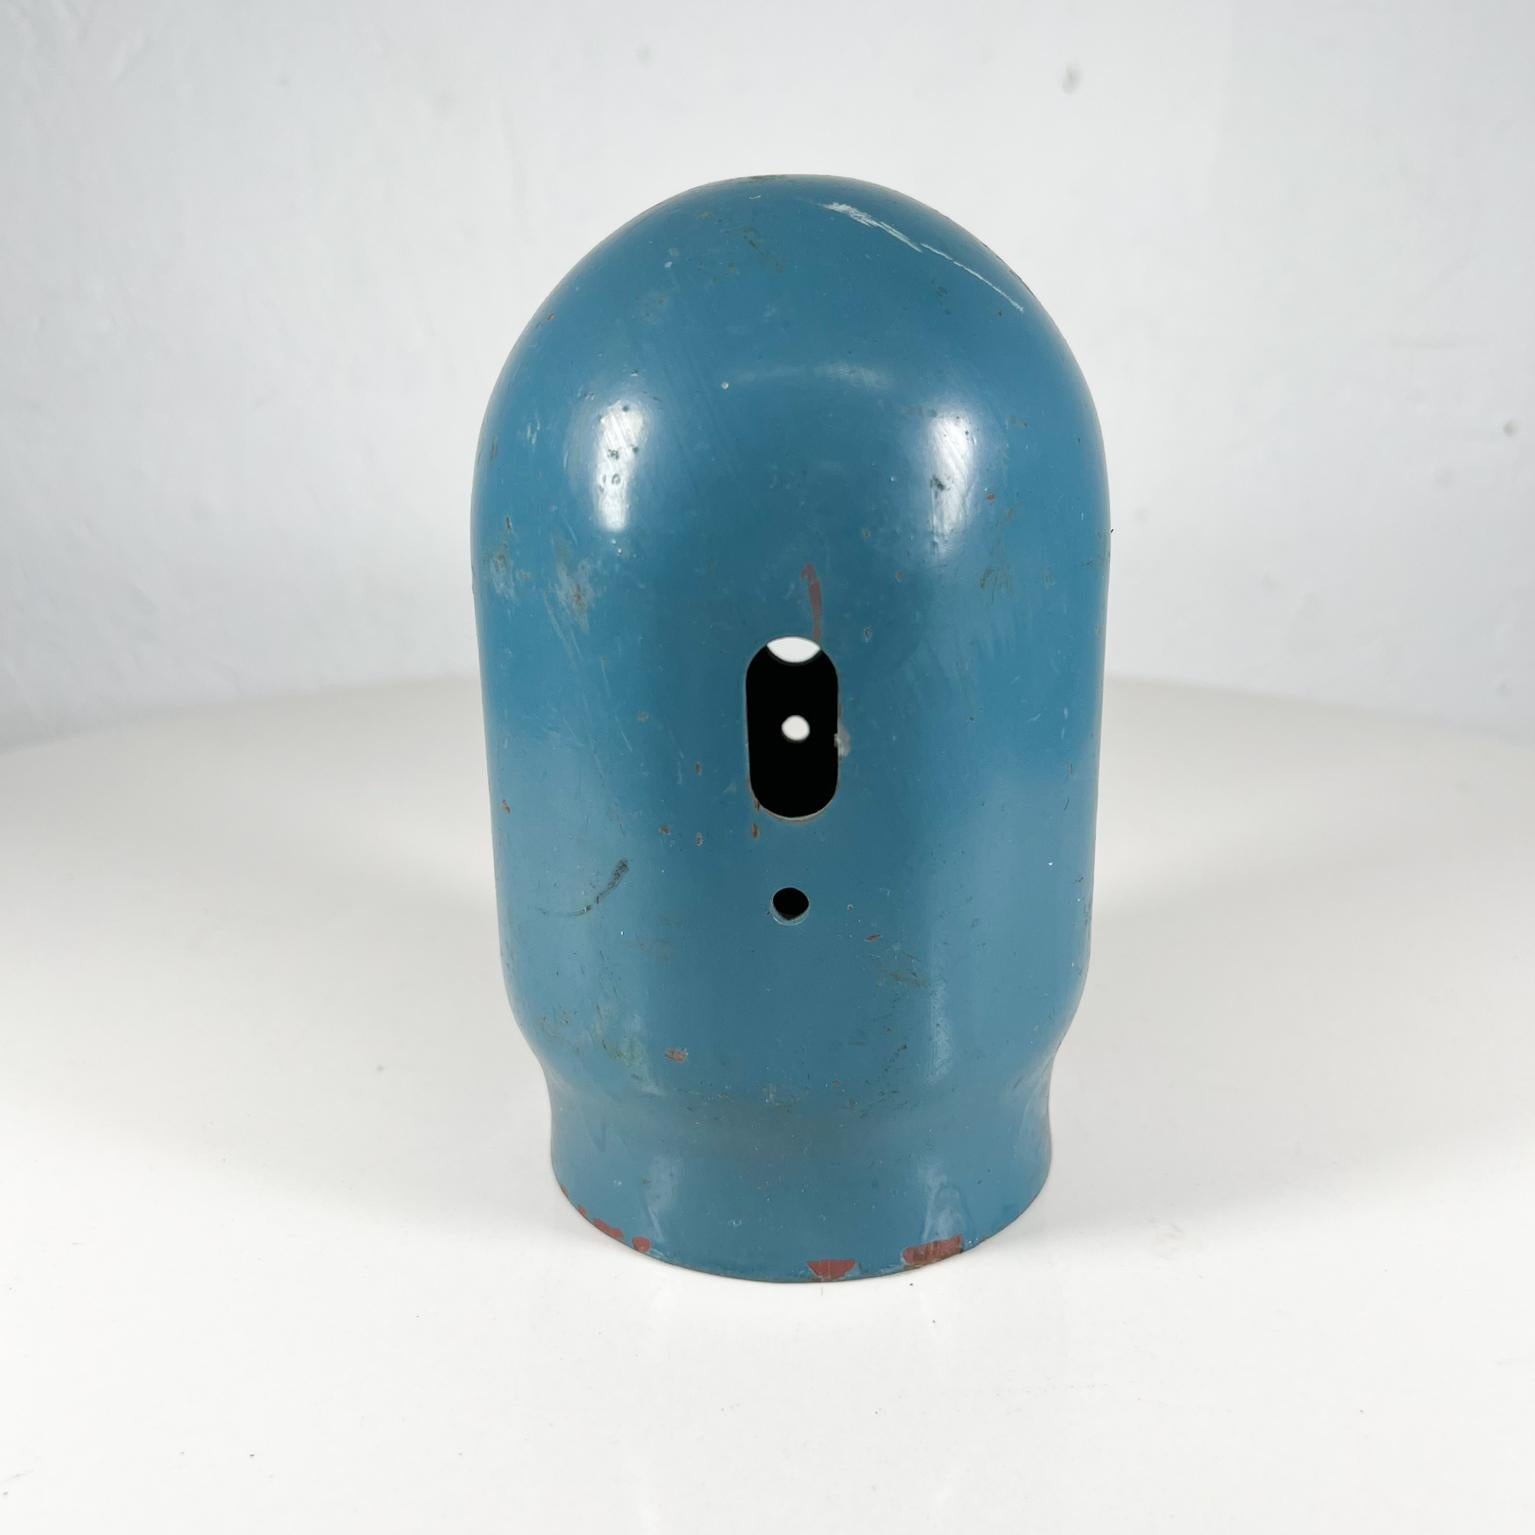 Blaue Metall Vintage Gasflasche Cap
6 hoch x 3,75 Durchmesser
Gebrauchter originaler unrestaurierter Vintage-Zustand.
Siehe mitgelieferte Bilder.


